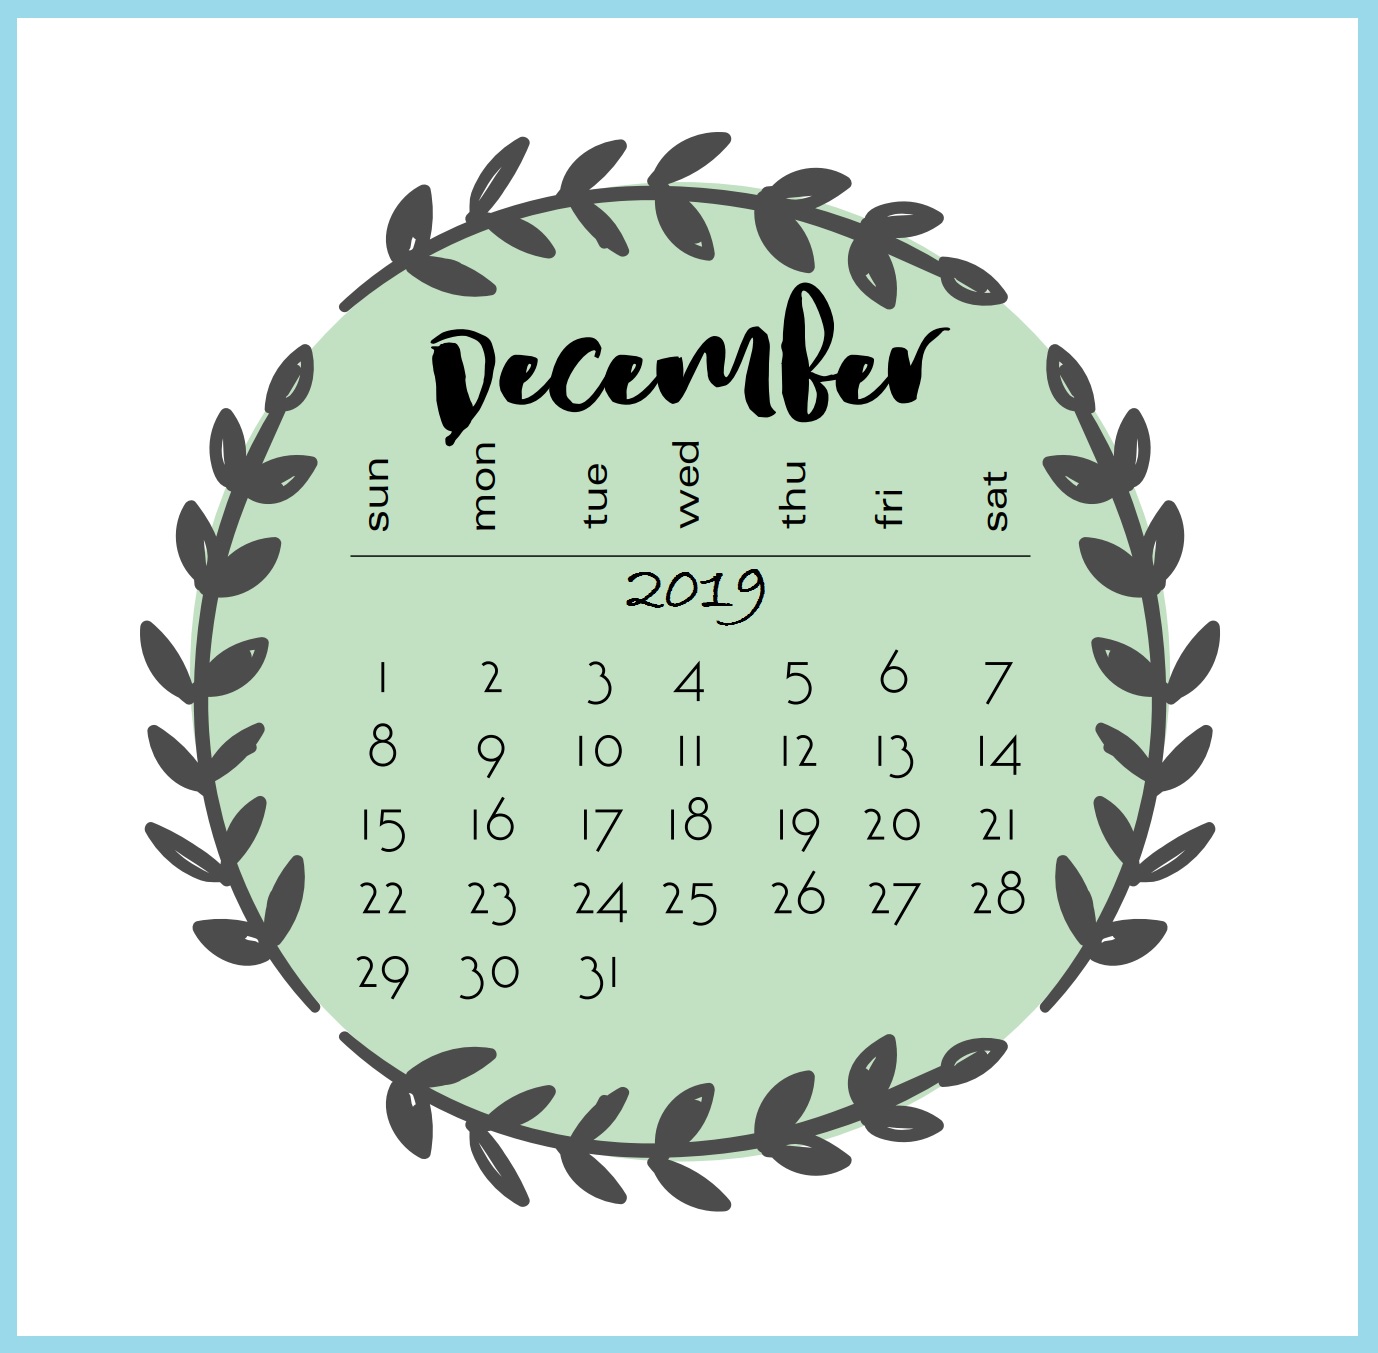 December 2019 Calendar Wallpaper - Cute December 2019 Calendar - HD Wallpaper 